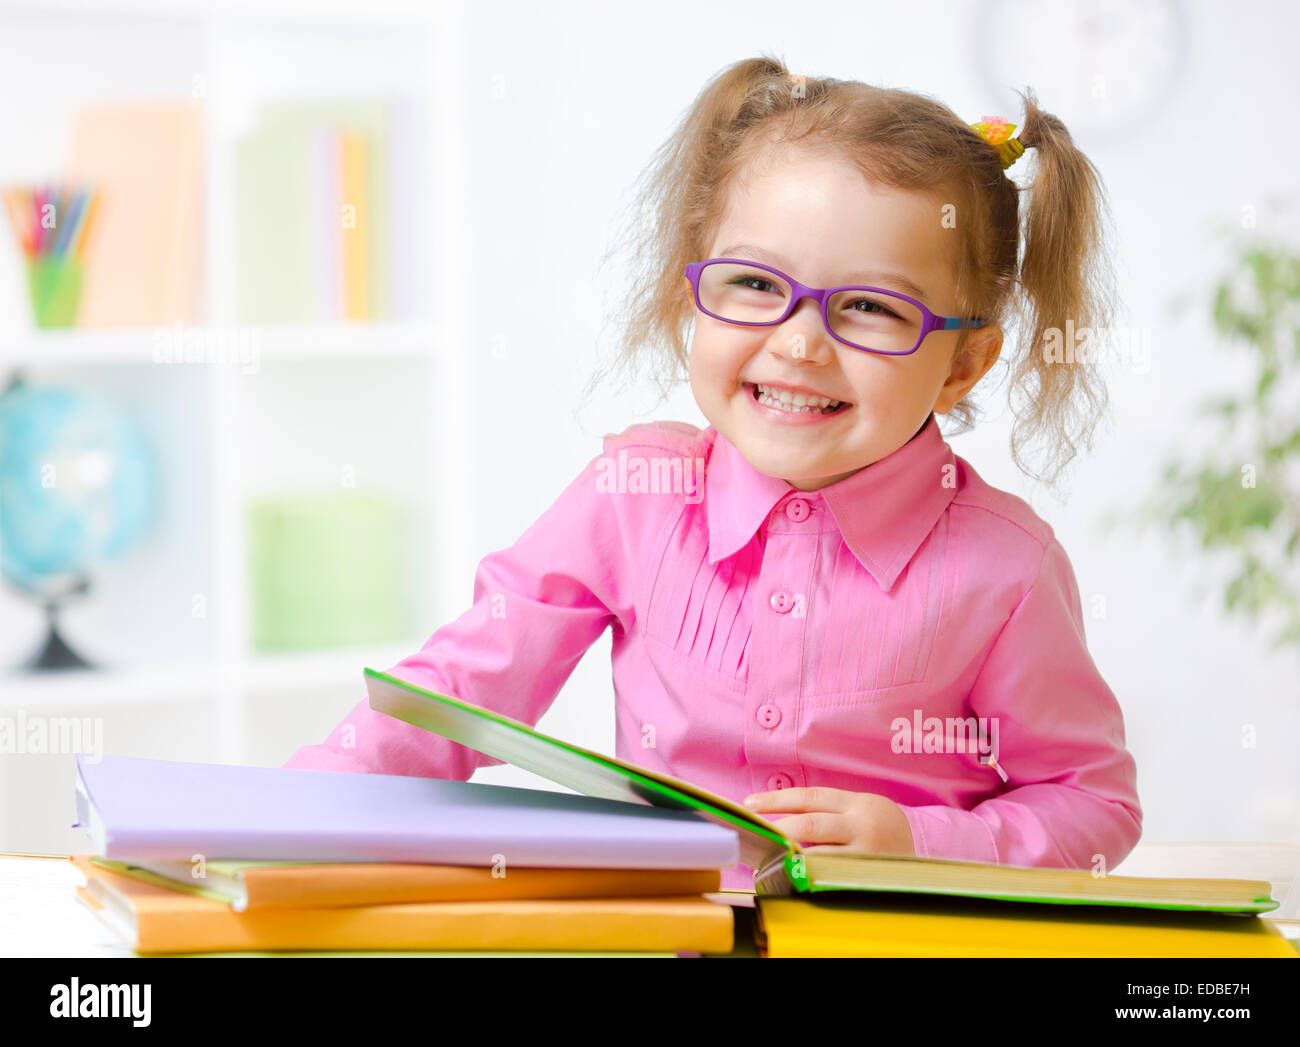 Happy child girl dans les verres la lecture de livres dans la pièce Banque D'Images